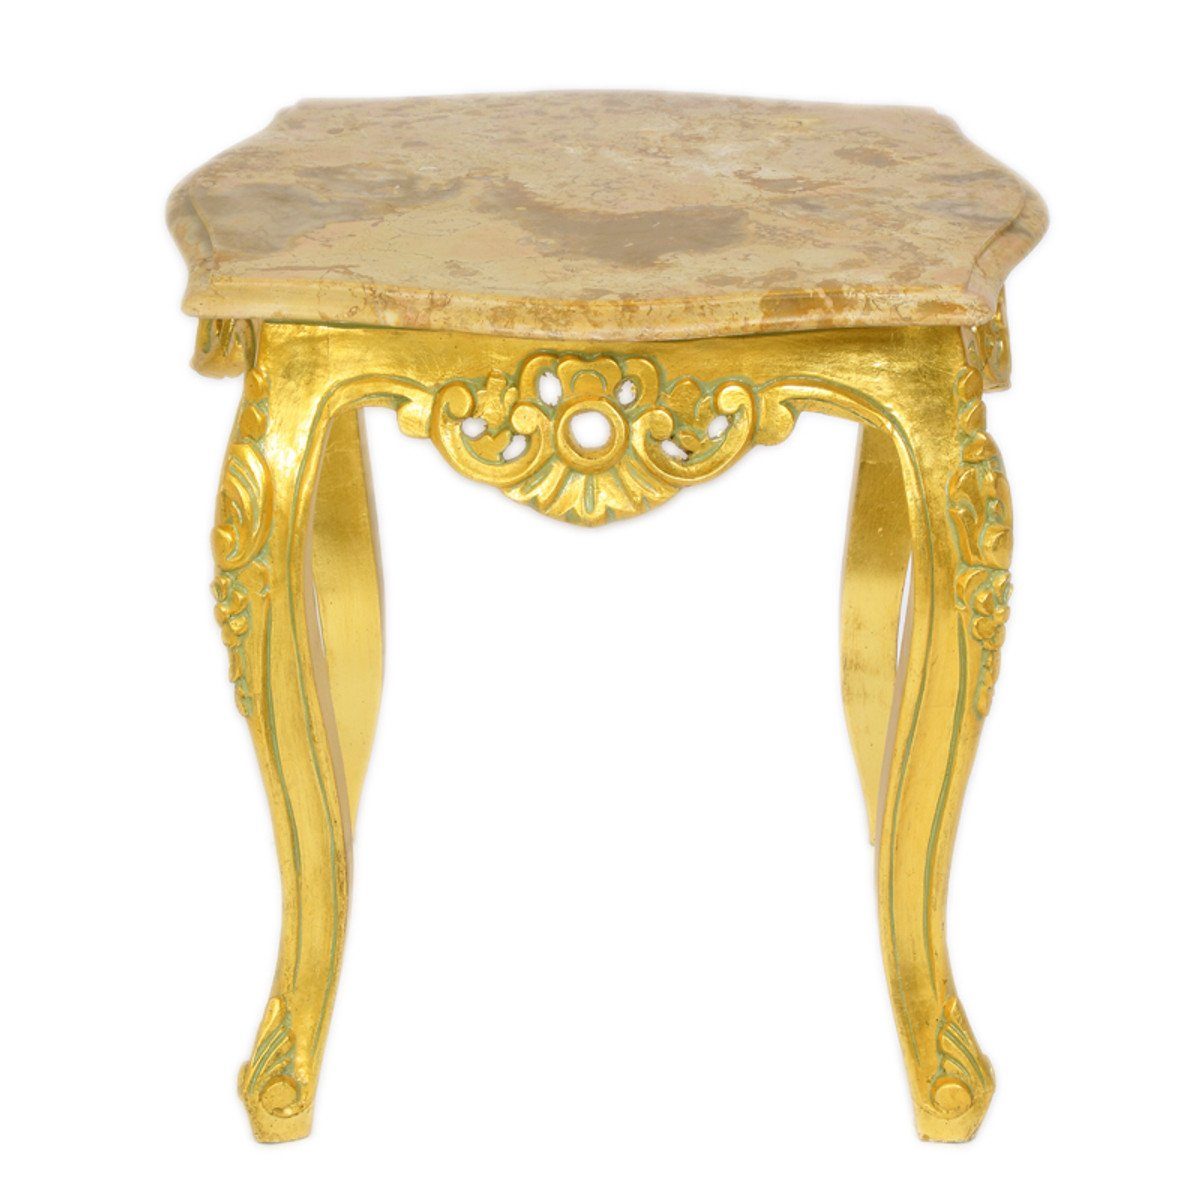 Casa Padrino Beistelltisch Barock Beistelltisch Gold mit cremefarbener Marmorplatte 55 x 55 cm x H 55 cm